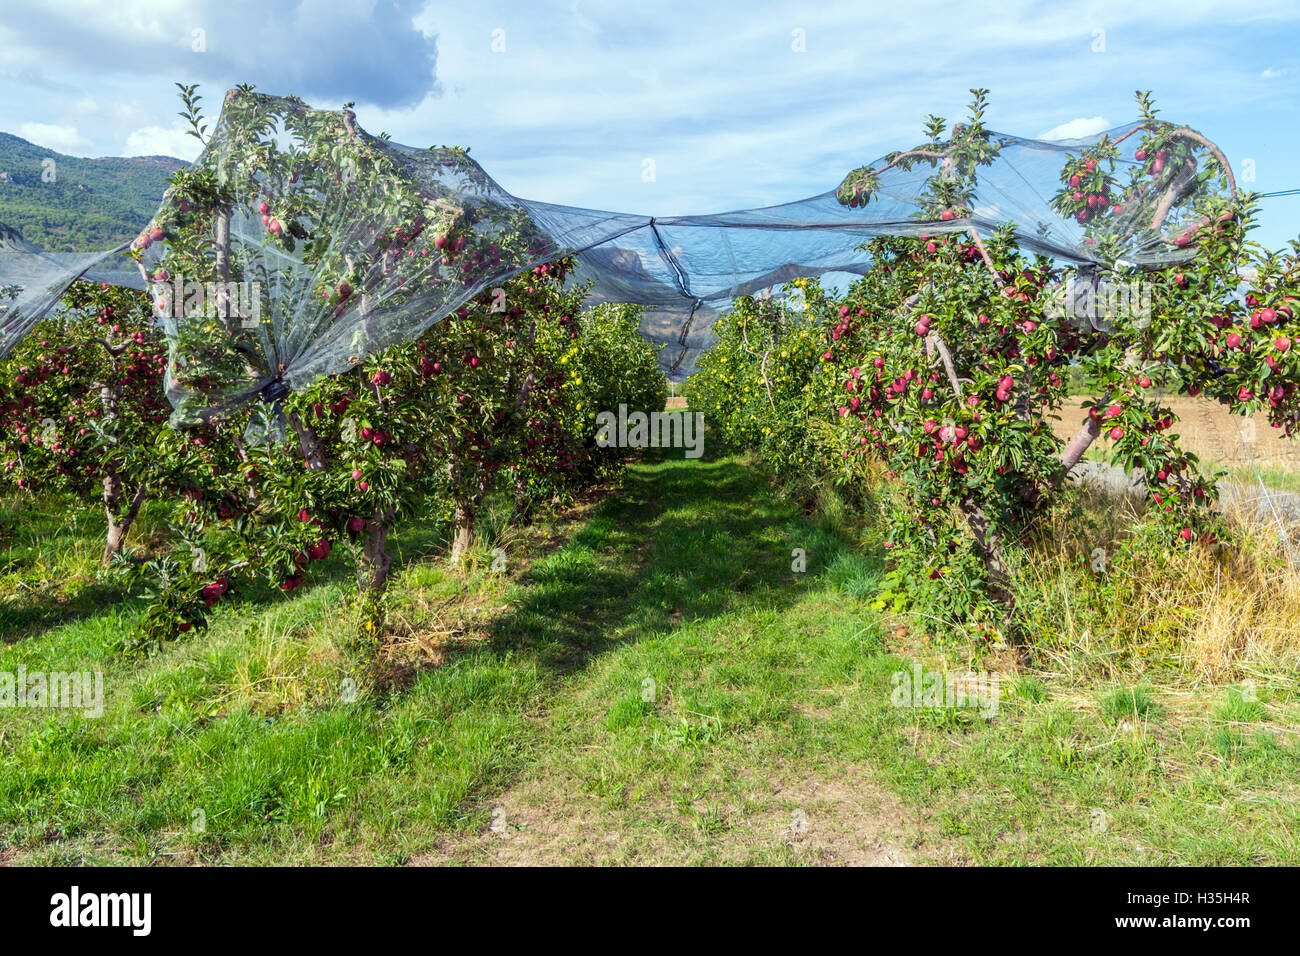 Pommes rouges sur les arbres croissant en vertu de la compensation dans le sud de la France, verger Banque D'Images